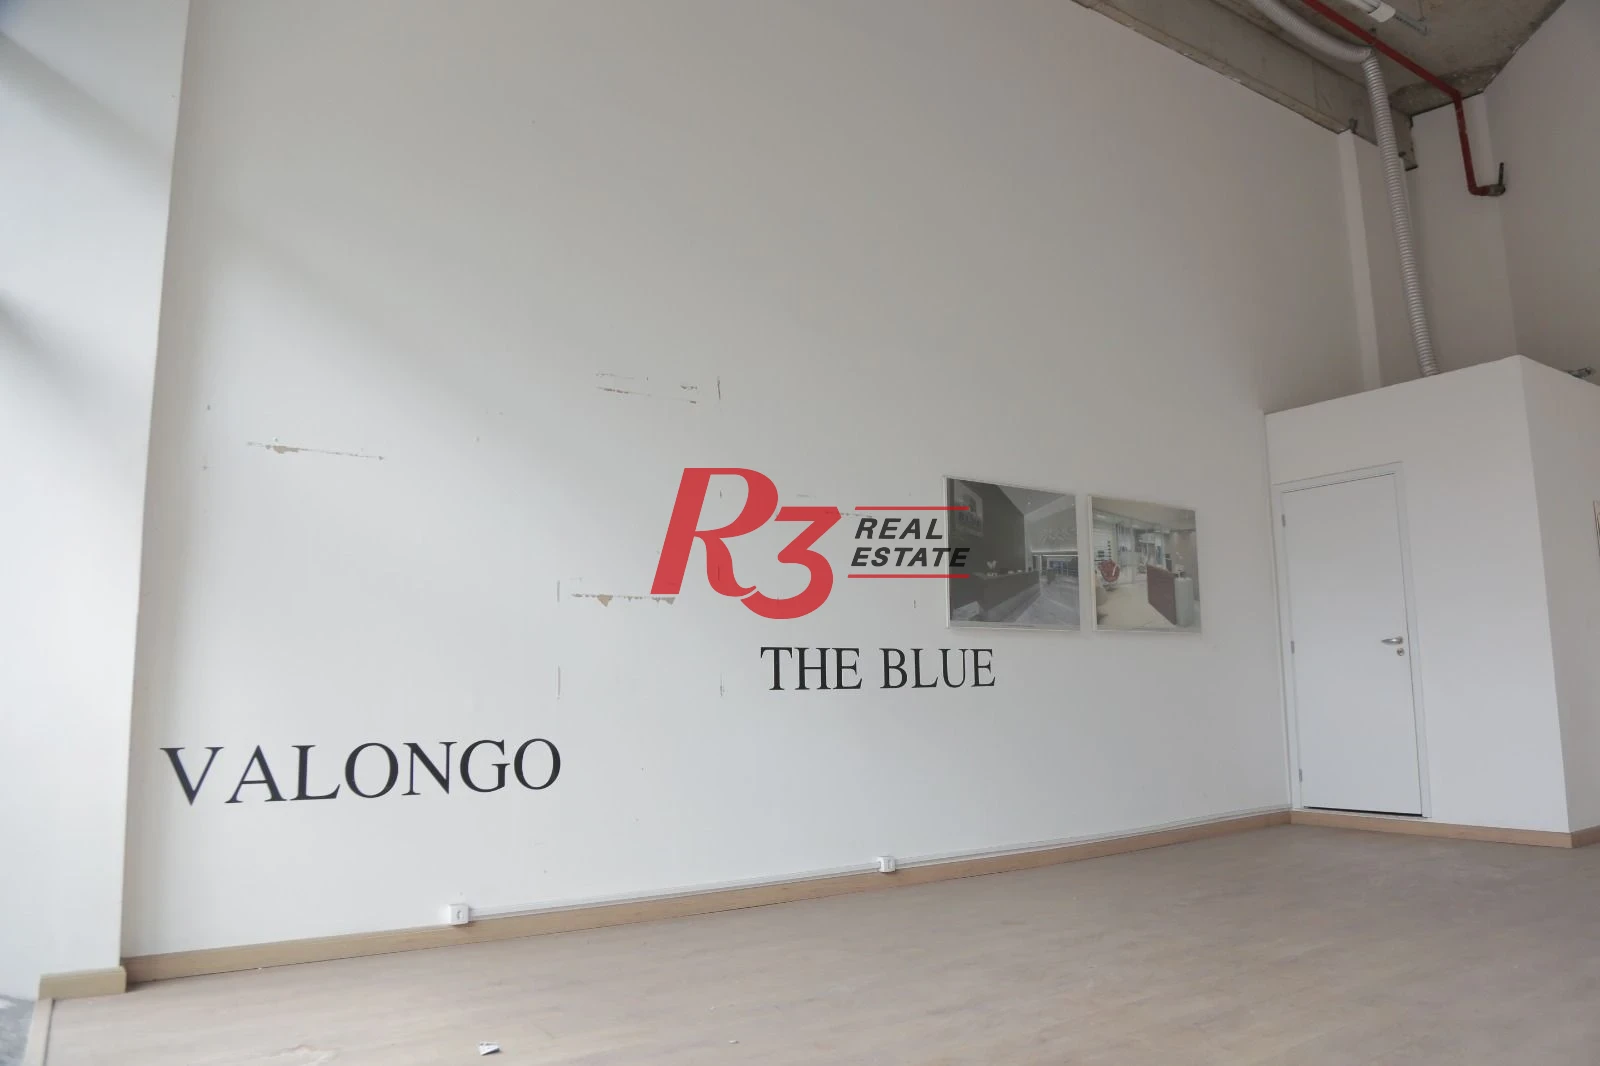 Sala à venda, 58 m² por R$ 310.000,00 - Valongo - Santos/SP